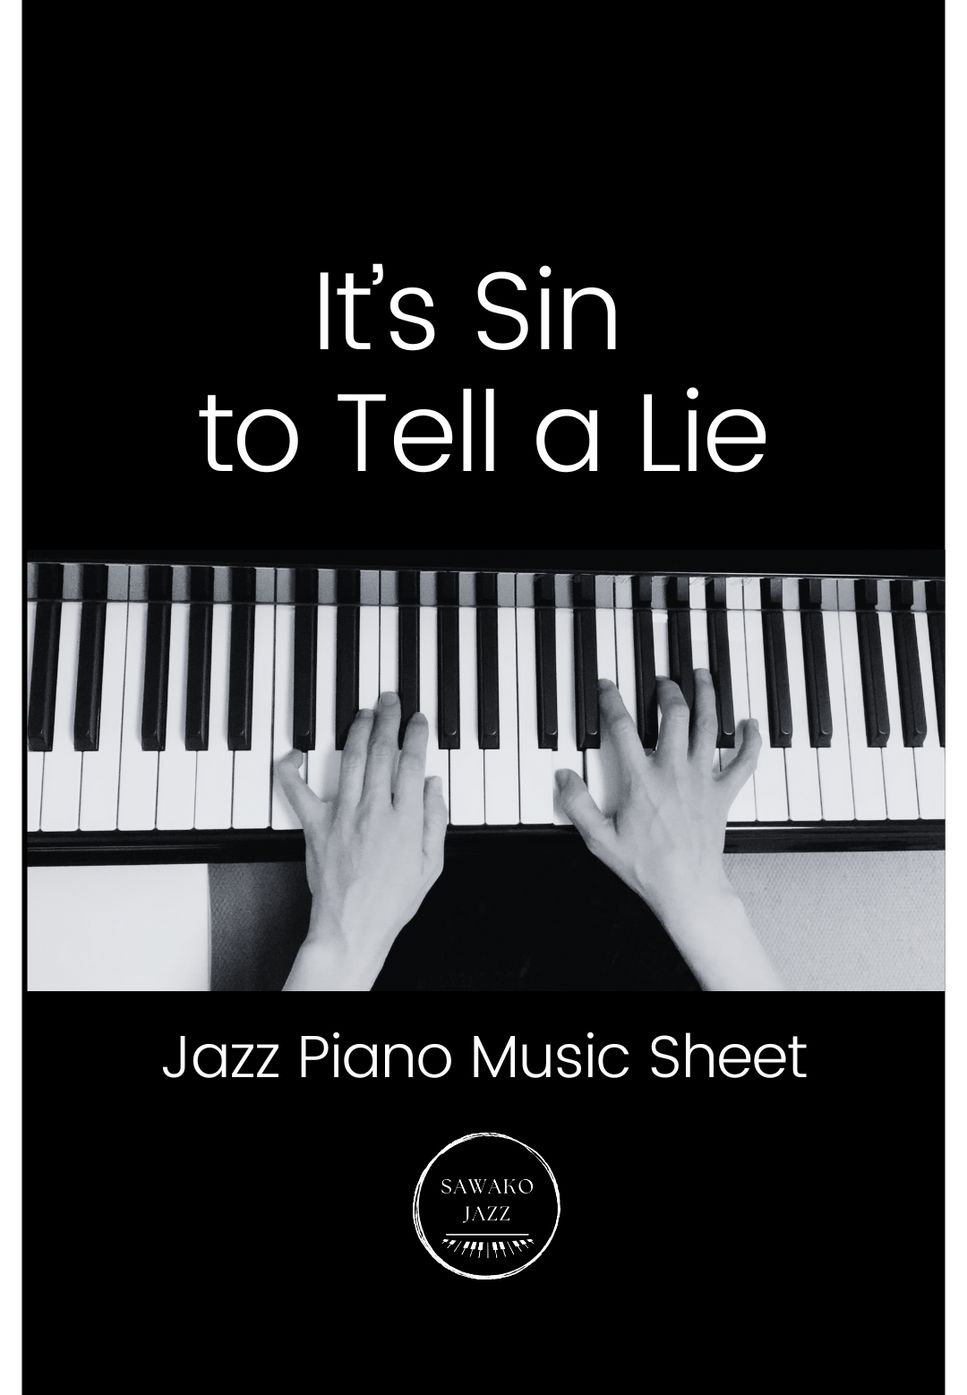 Billy Mayhew - It’s a sin to tell a lie (piano solo / jazz) by Sawako Hyodo